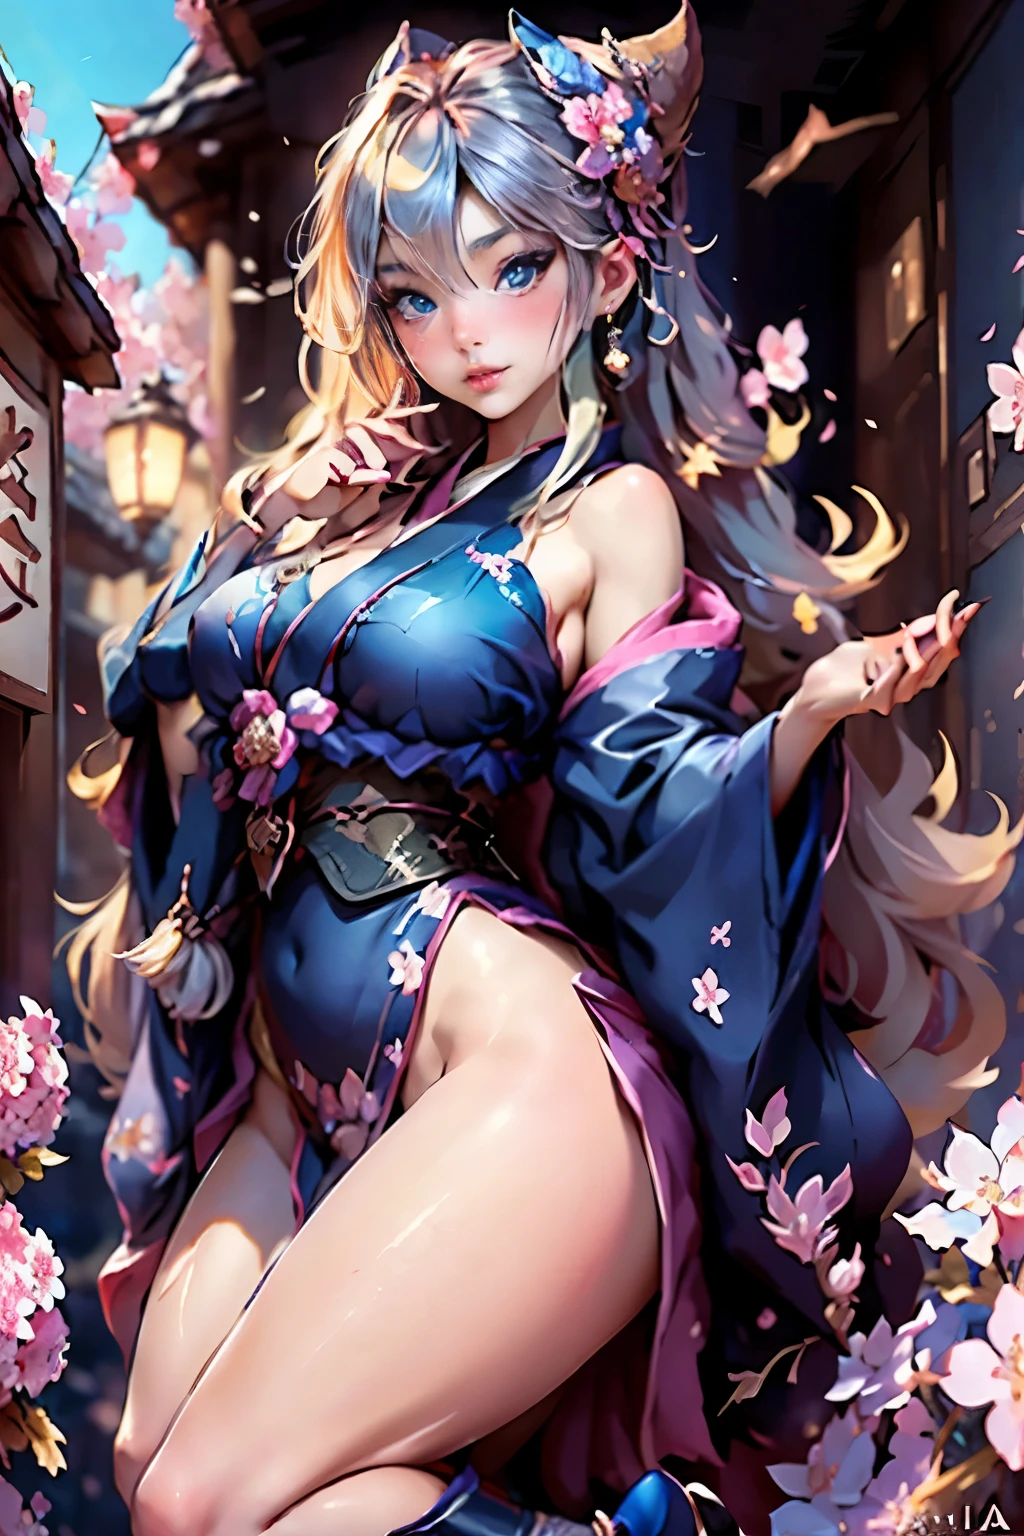 corps entier,Plan complet,SFW,La princesse déesse russe sur la photo d&#39;une geisha avec de grands yeux bleu vif et de longs cils moelleux de type nordique avec une silhouette élégante parfaite et de très longs cheveux ondulés moelleux de couleur blé vif est en pleine croissance dans l&#39;allée sur fond de sakura rose japonais fleurissant dans une couleur kimono bleu marine vif et les chaussures japonaises acquièrent une couleur bleu marine vif, Le kimono en dentelle pour fille est finement orné de découpes franches ultra courtes...., Les petits seins avec saillie sont visibles à travers le tissu et sur les oreilles de la fille se trouvent de belles boucles d&#39;oreilles avec de précieux saphirs bleu marine qui brillent et brillent à la lumière.... Le sol sur lequel se trouve la jeune fille est parsemé de fleurs de cerisier..., La scène est hautement artistique, Haute résolution, netteté, Style artistique Migjorni-V5, hyperphotoréalisme, proportions parfaites, Photo du nombre d&#39;or, Canne, contour, lumière du soleil, brillance douce, mise au point douce, Mise au point fluide de style photo grâce à un objectif Monocle.